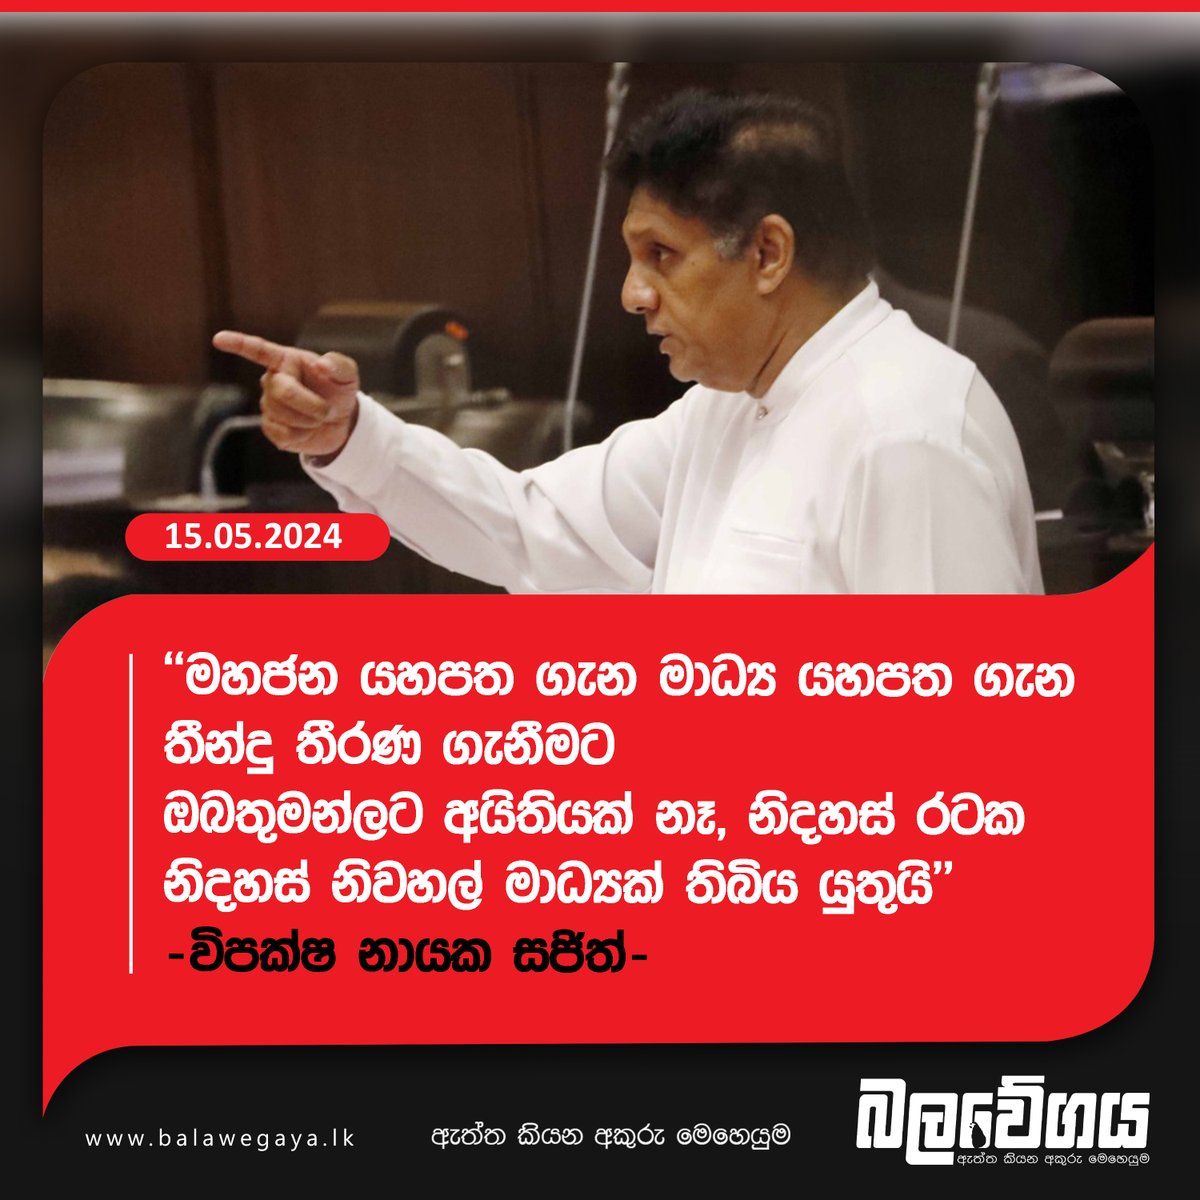 'මහජන යහපත ගැන මාධ්‍ය යහපත ගැන තීන්දු තීරණ ගැනීමට ඔබතුමන්ලට අයිතියක් නෑ, නිදහස් රටක නිදහස් නිවහල් මාධ්‍යක් තිබිය යුතුයි' - විපක්ෂ නායක සජිත් (VIDEO)

දැන ගන්න - balavegaya.lk/?p=19436

#lka #SriLanka #Balawegaya #SajithPremadasa #OppositionLeader